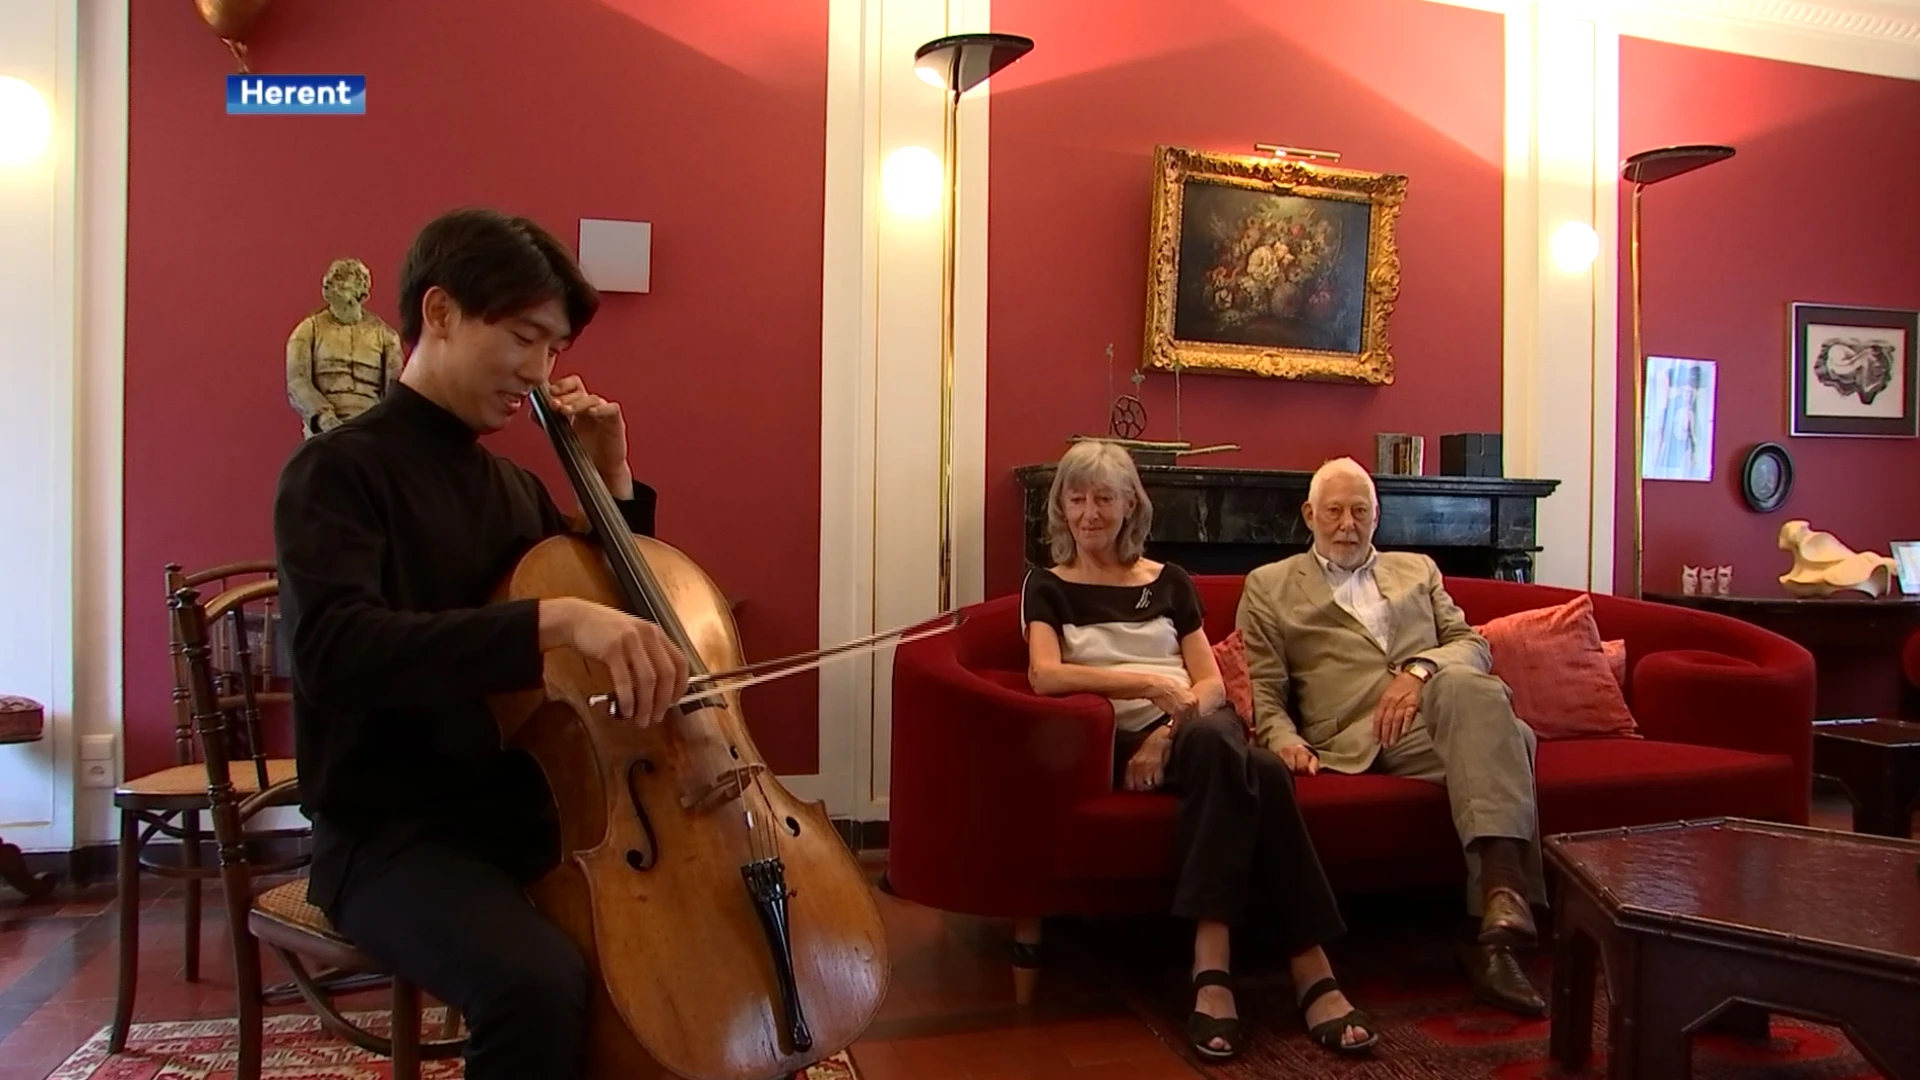 "Droom van elke muzikant": gezin uit Herent vangt Zuid-Koreaanse cellist op die meedoet aan Koningin Elisabethwedstrijd